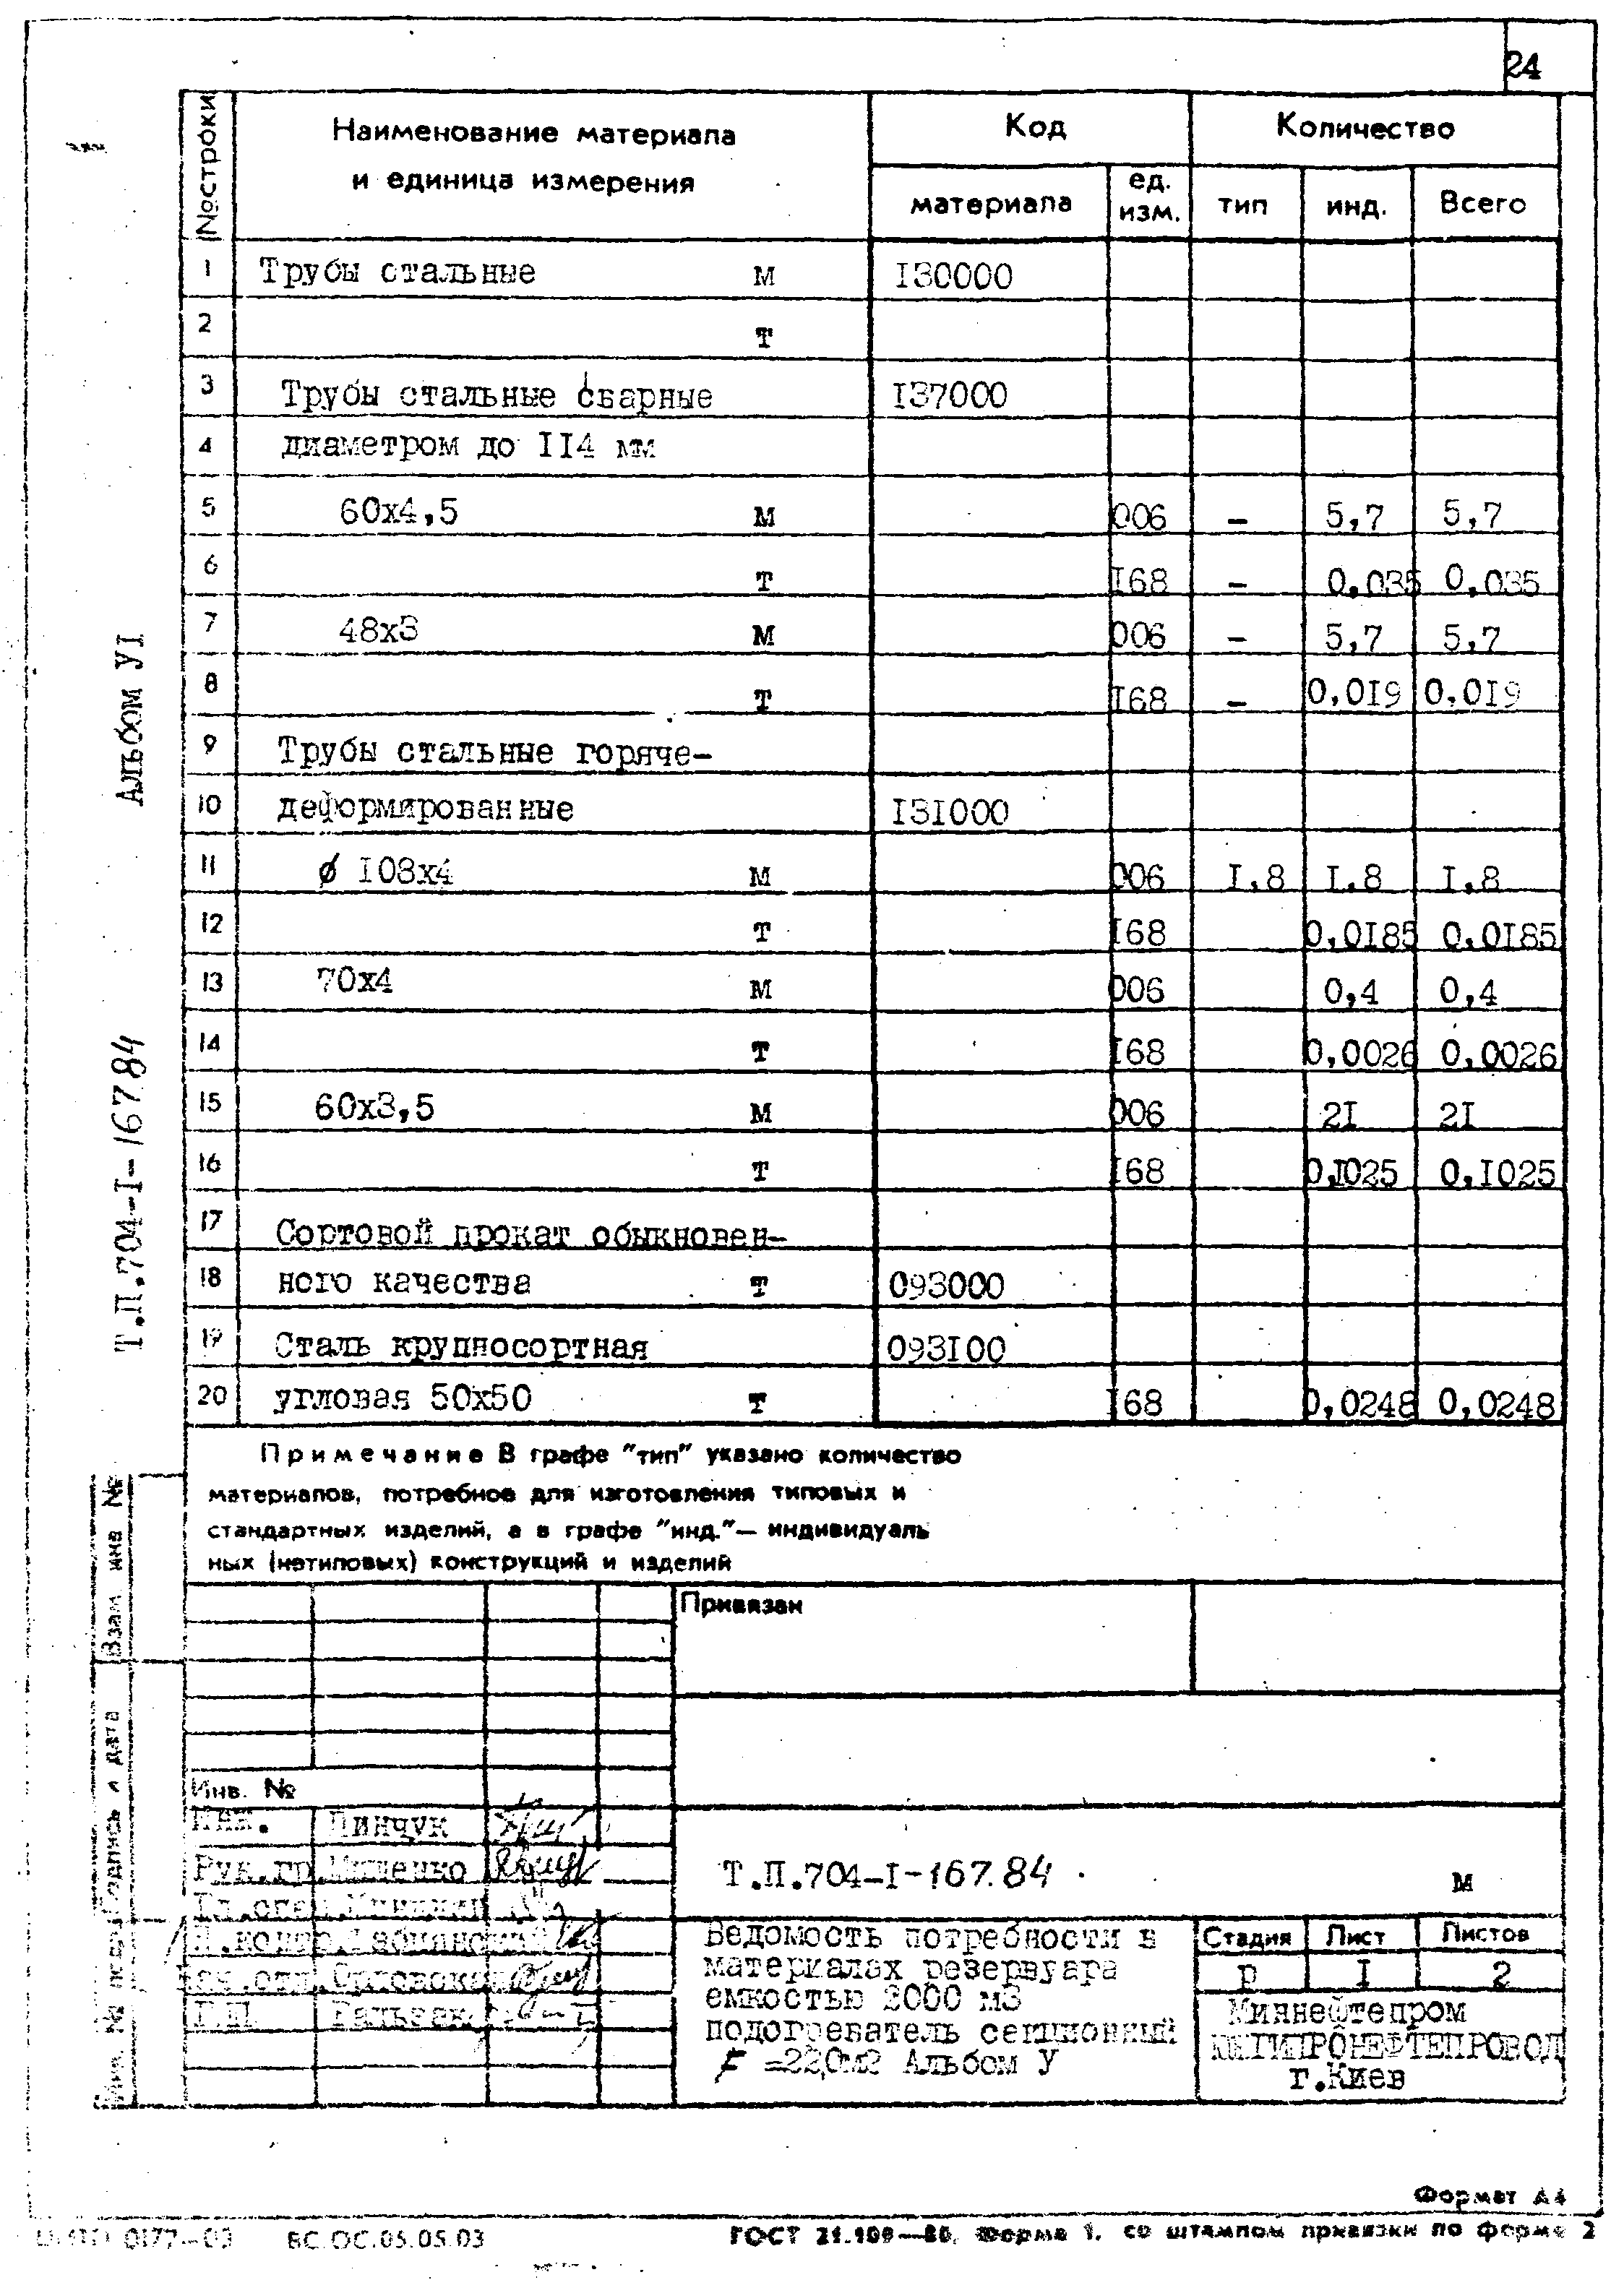 Типовой проект 704-1-167.84